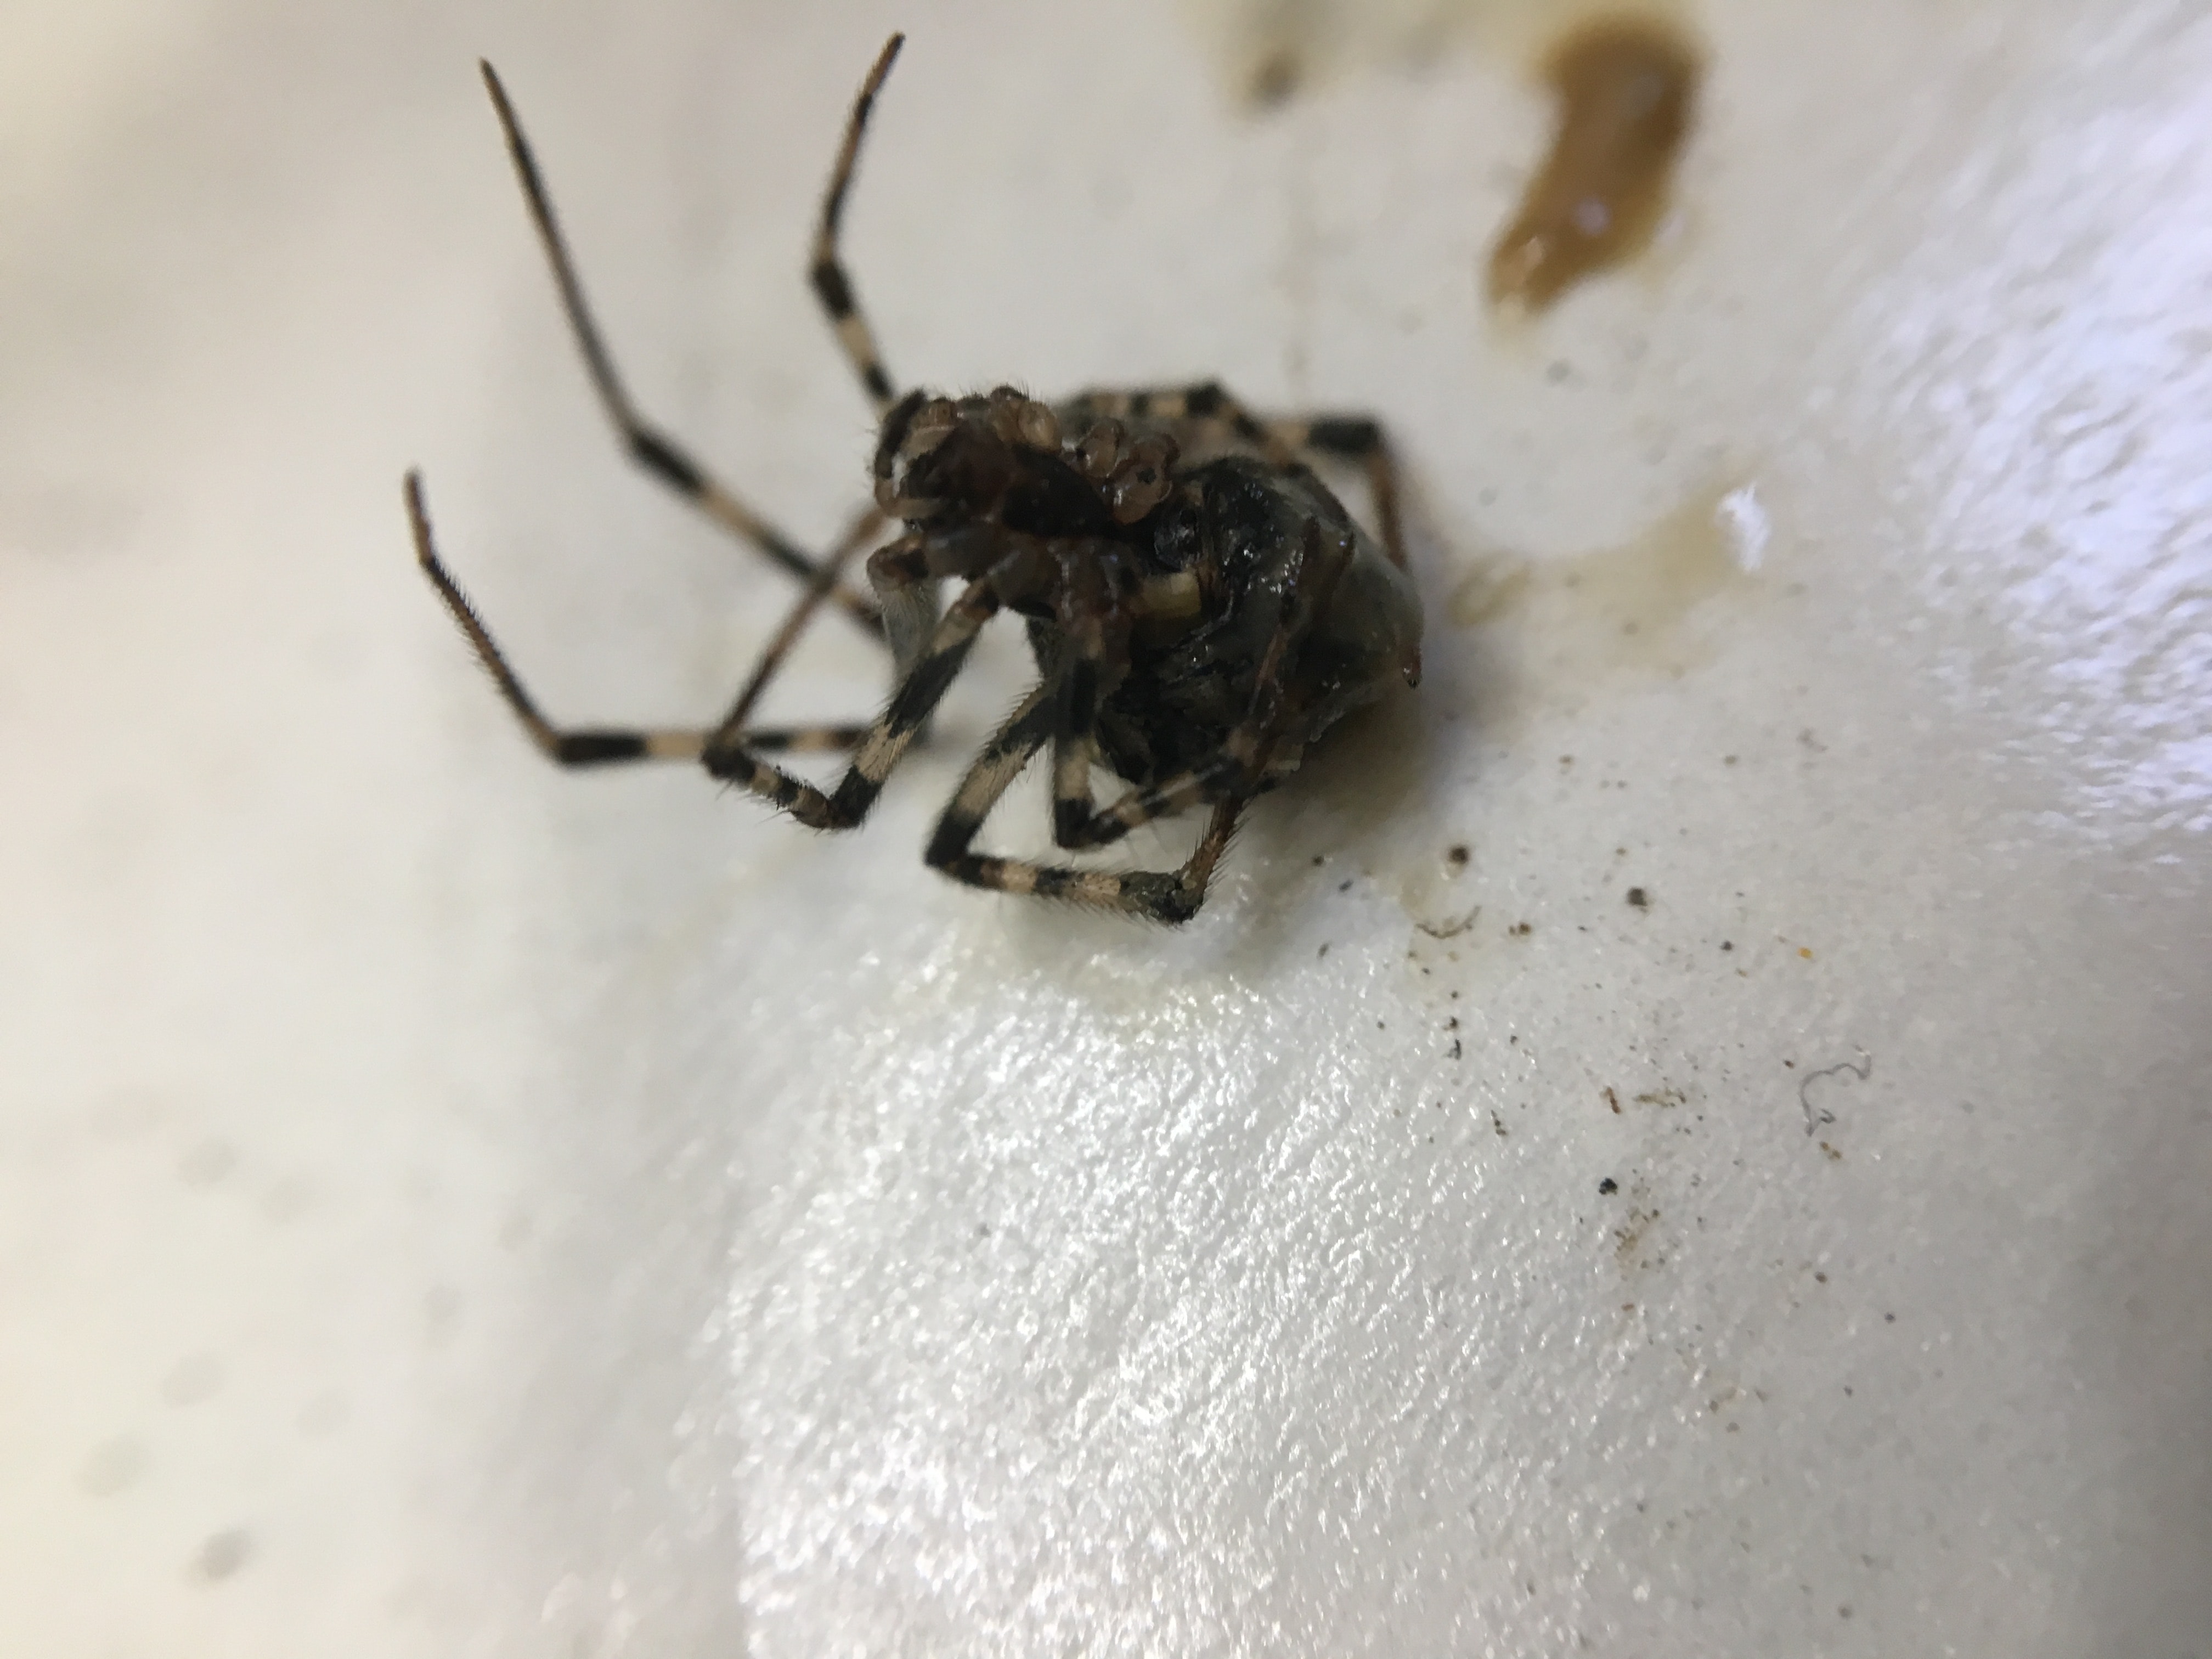 Picture of Parasteatoda tepidariorum (Common House Spider) - Female - Ventral